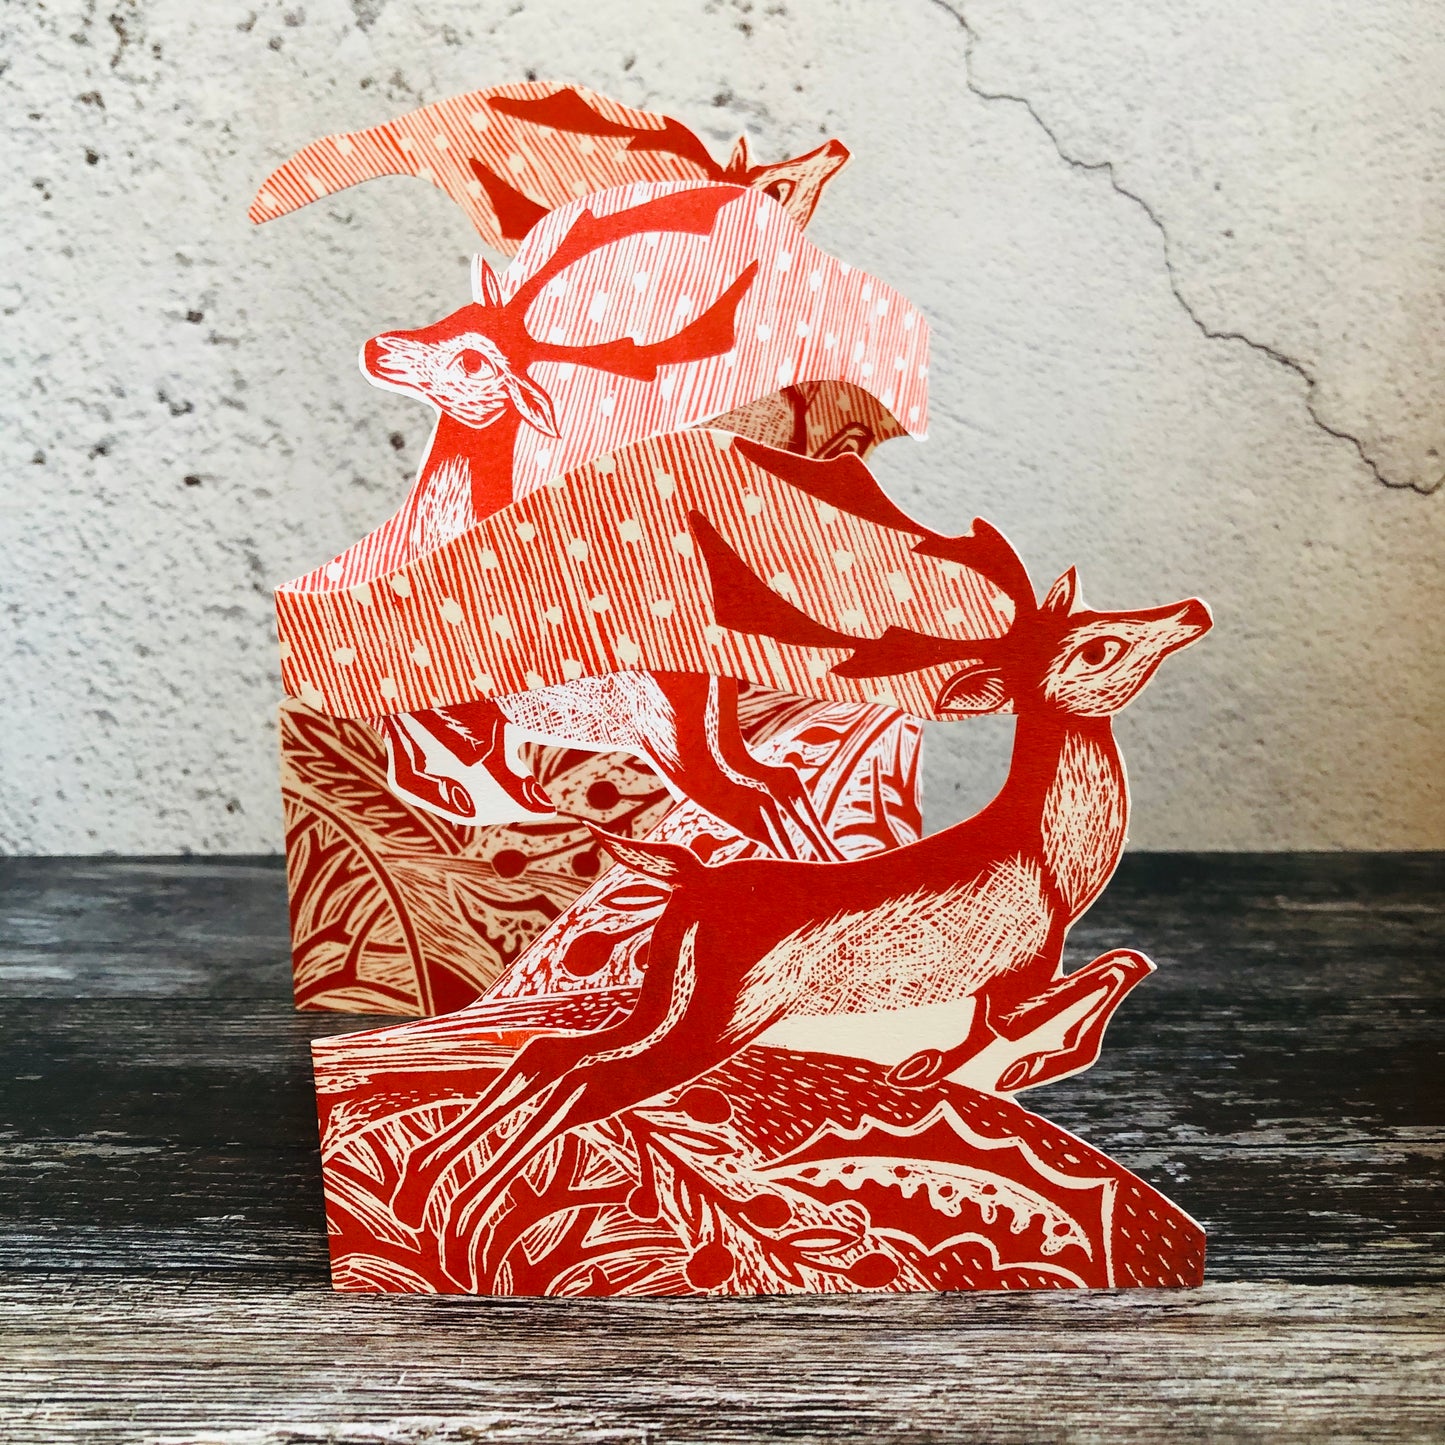 3D Prancing Reindeer Tri-fold by Printmaker Judy Lumley